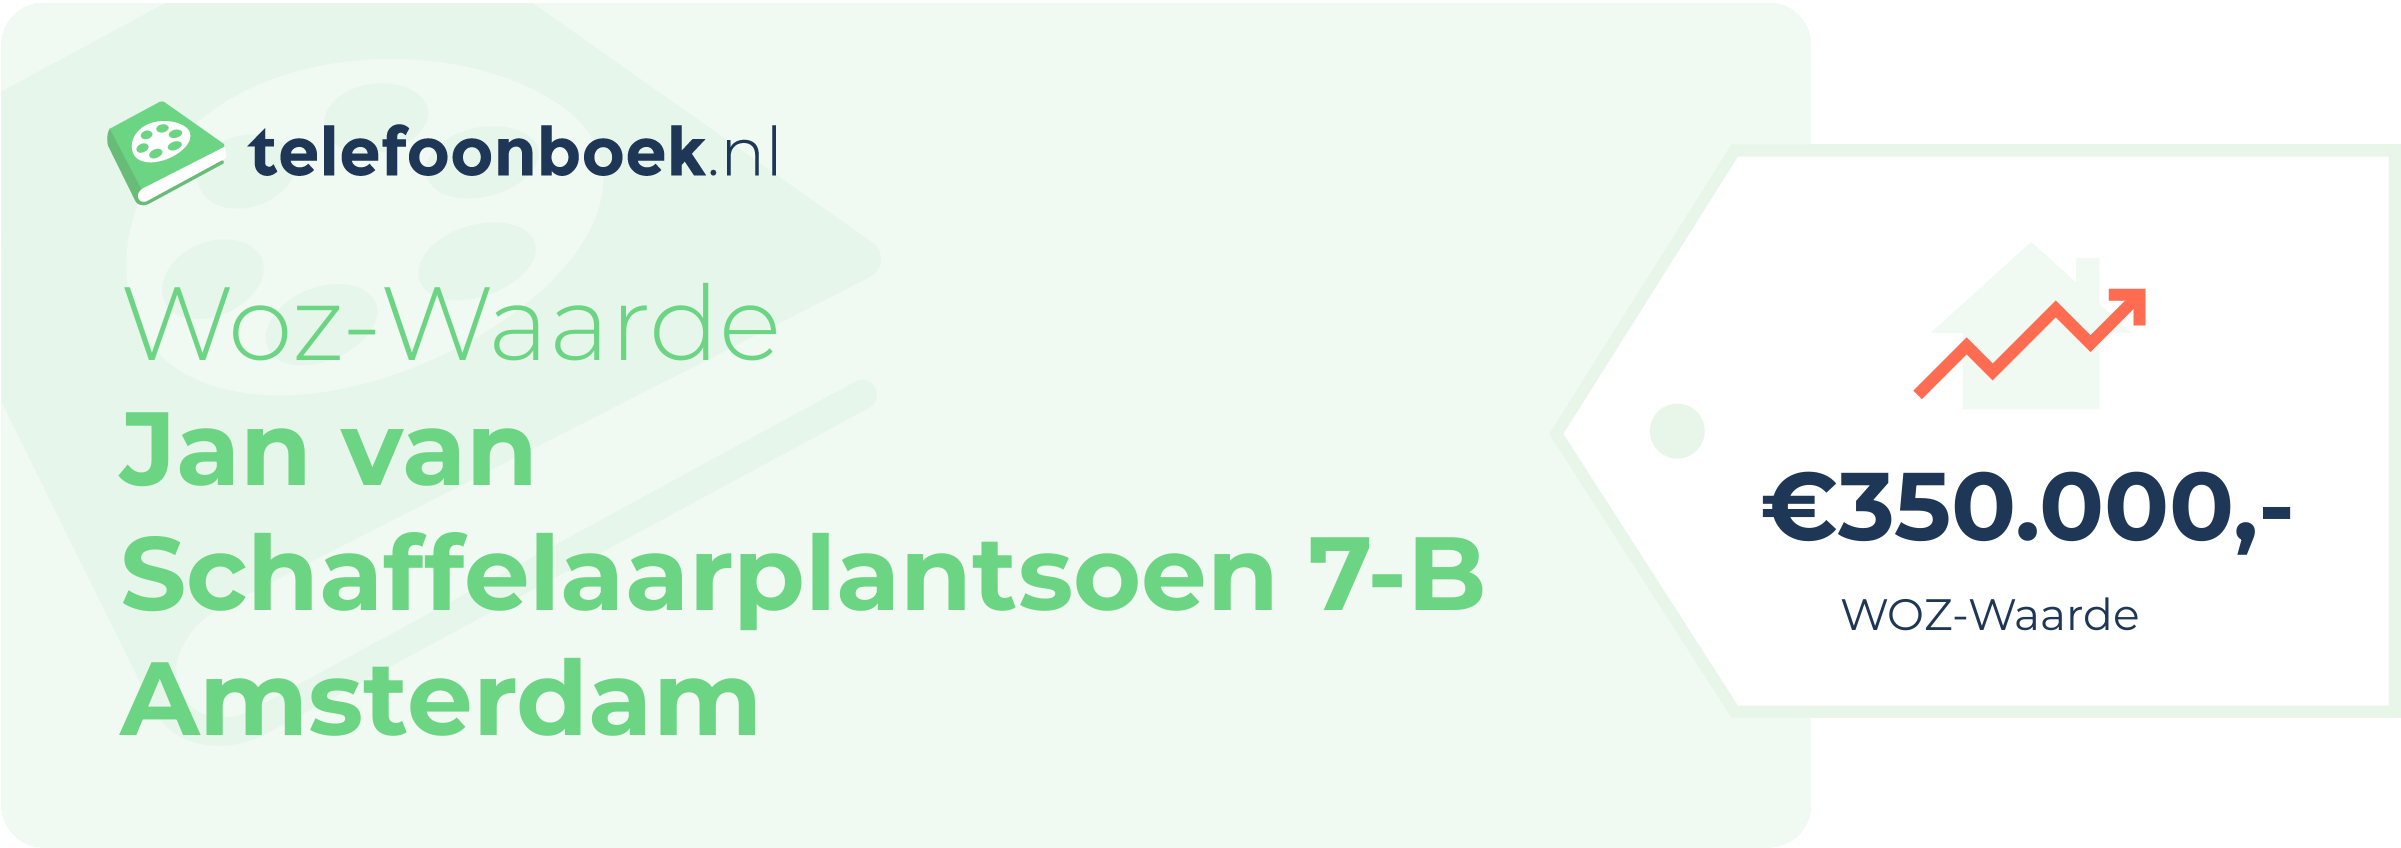 WOZ-waarde Jan Van Schaffelaarplantsoen 7-B Amsterdam